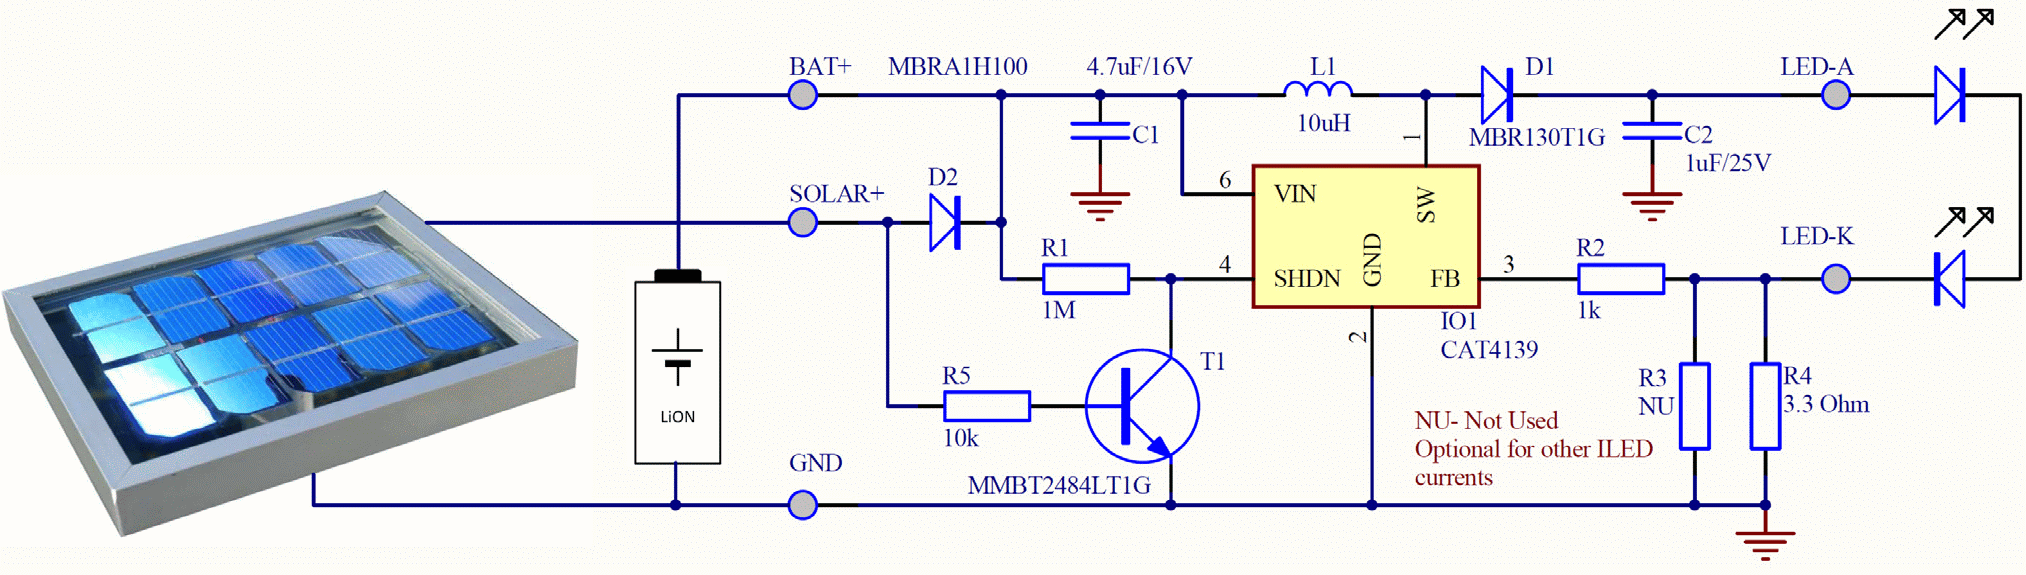 Solar LED circuit diagram